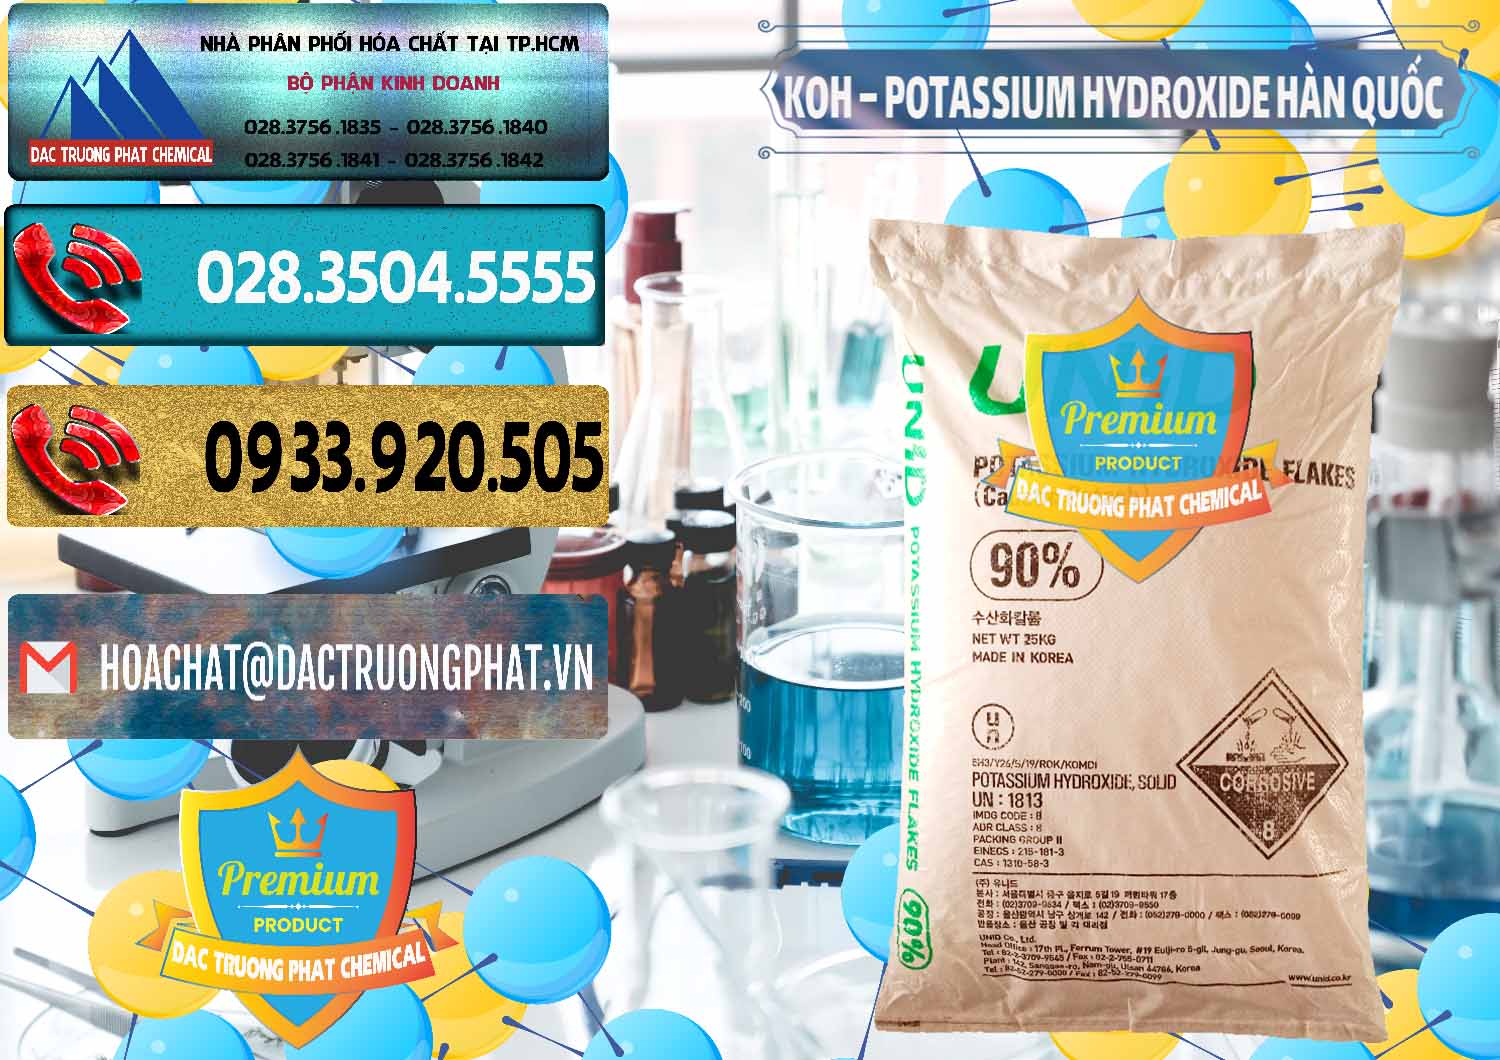 Nơi kinh doanh và bán KOH ( 90%) – Potassium Hydroxide Unid Hàn Quốc Korea - 0090 - Nhà cung cấp & phân phối hóa chất tại TP.HCM - hoachatdetnhuom.com